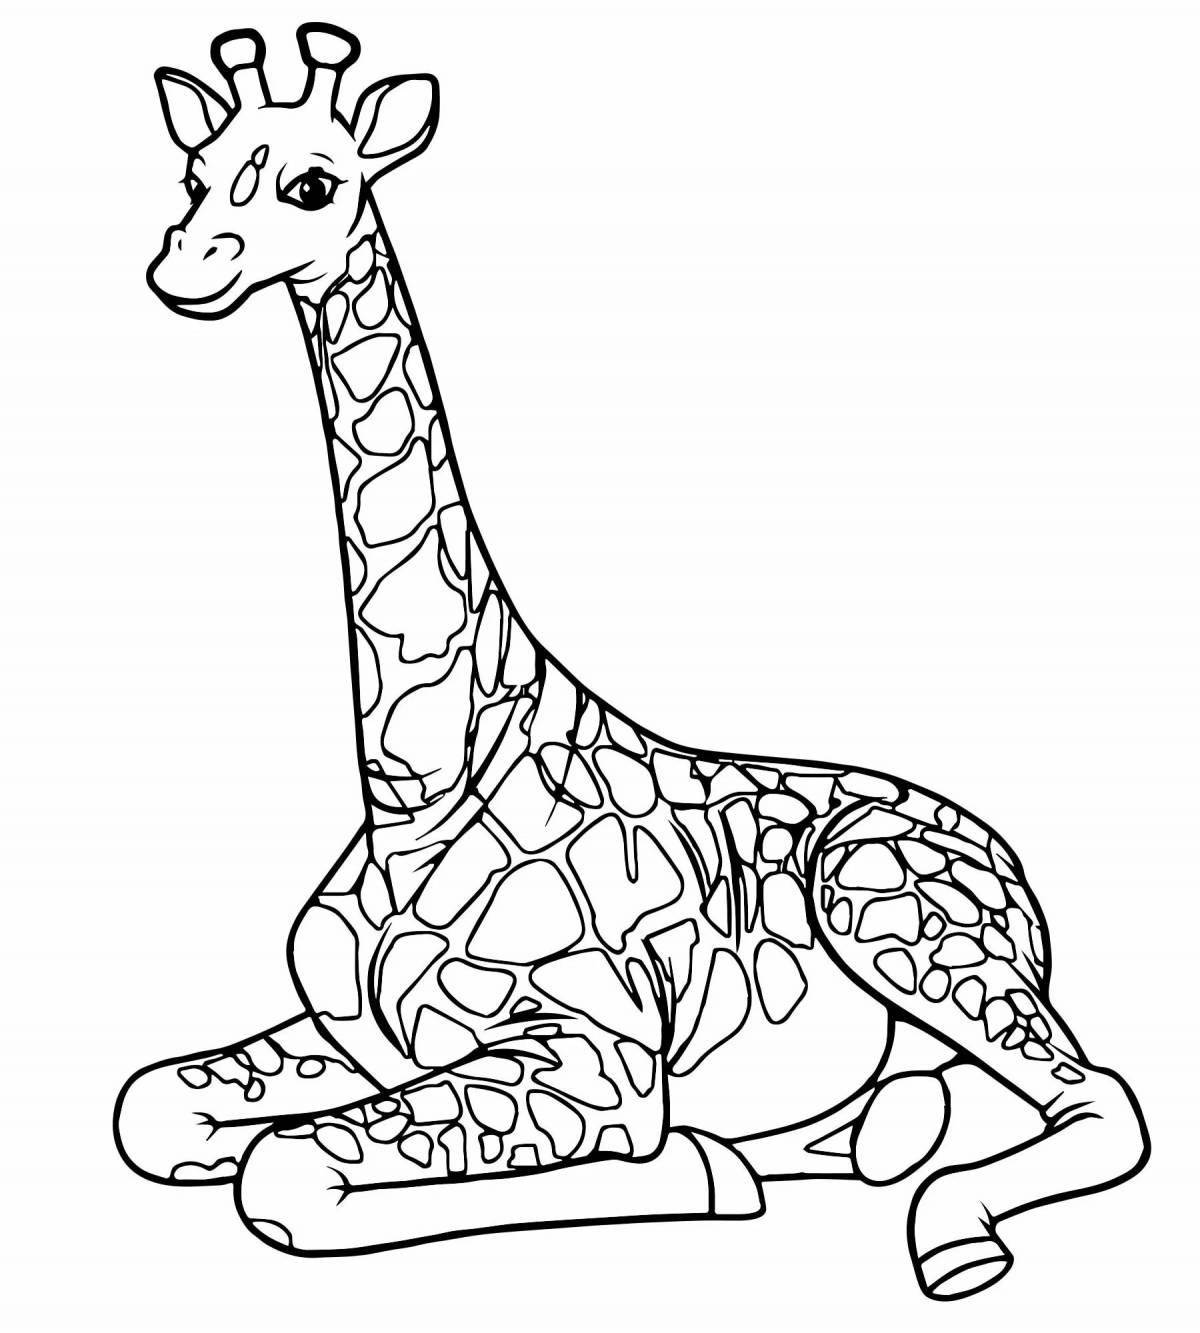 Увлекательная раскраска жирафа для детей 6-7 лет